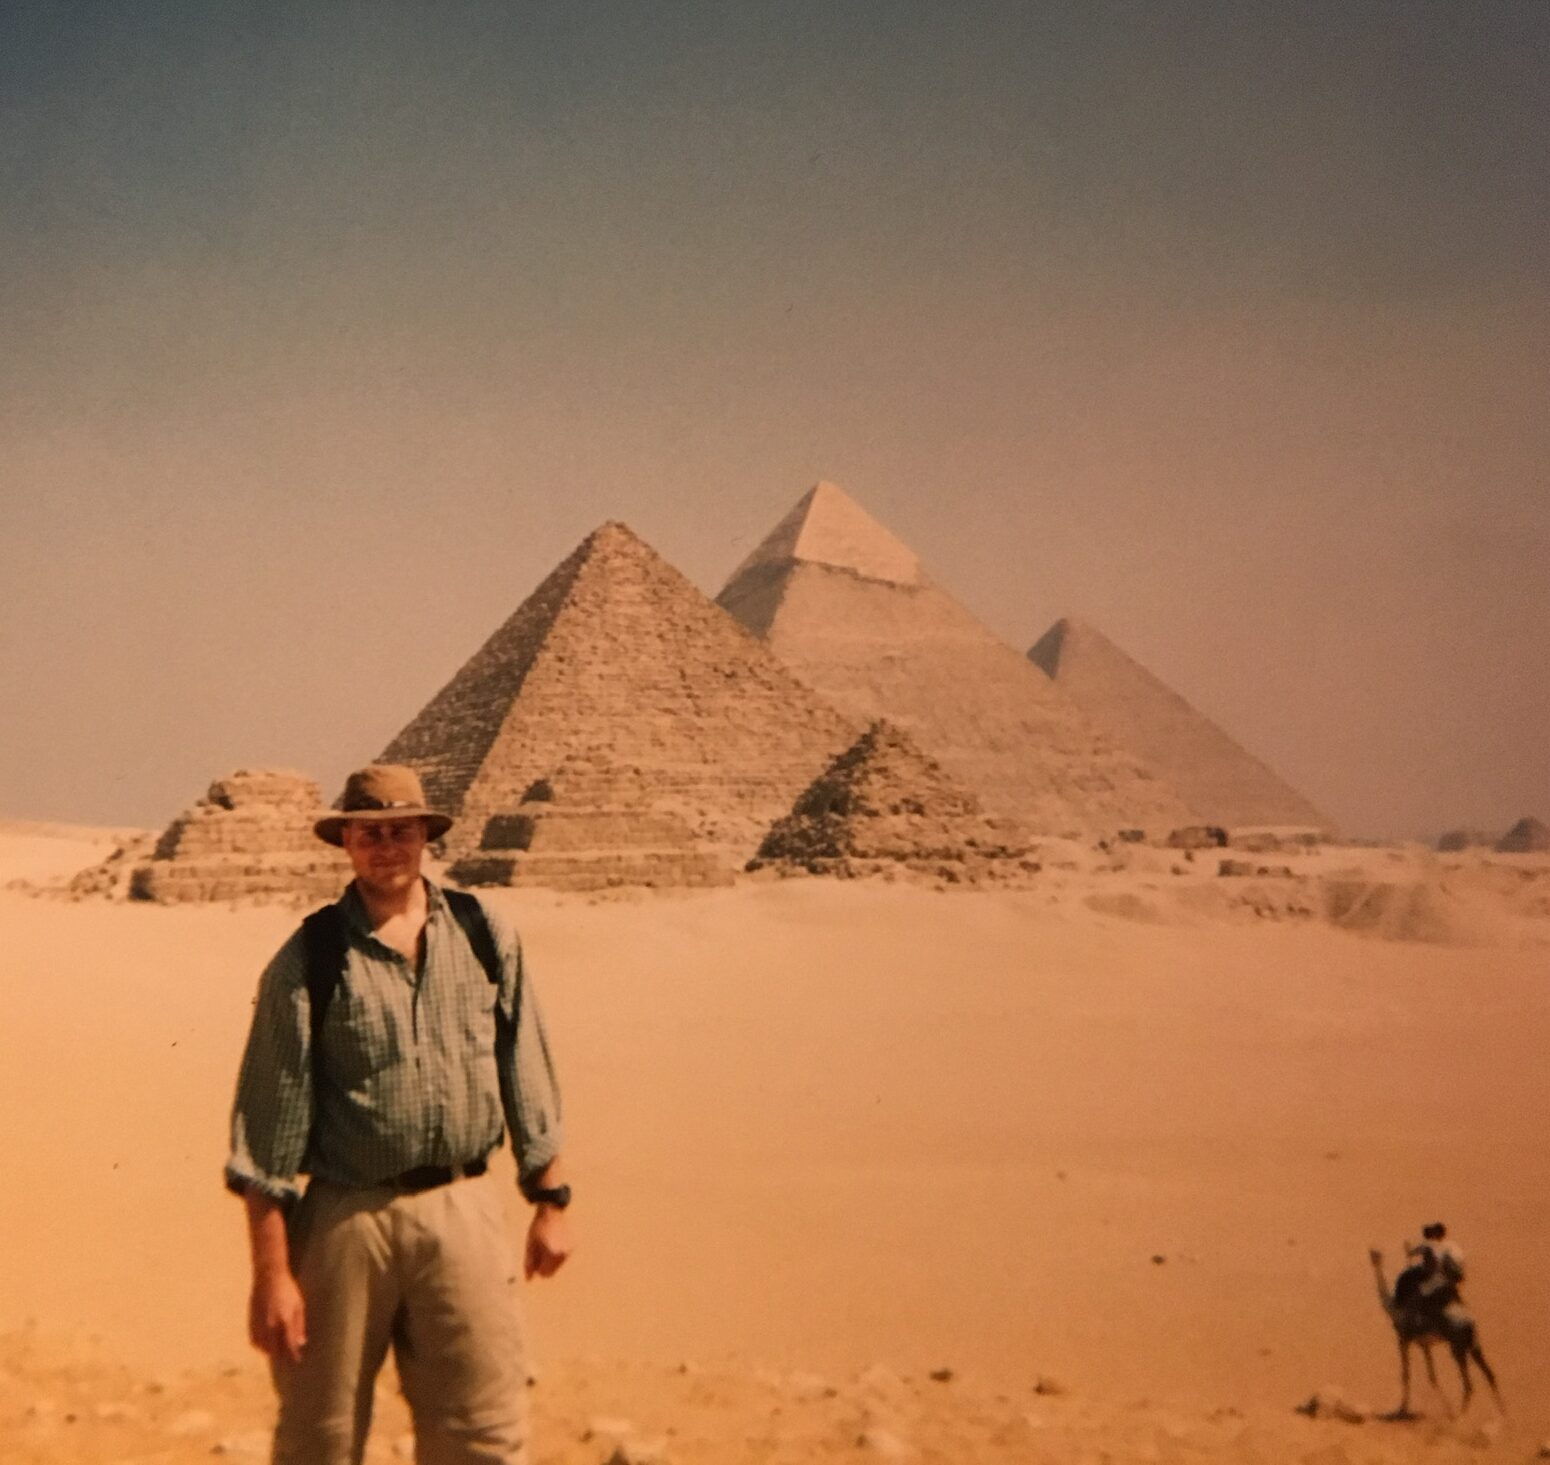 Jon Opdyke next to pyramids